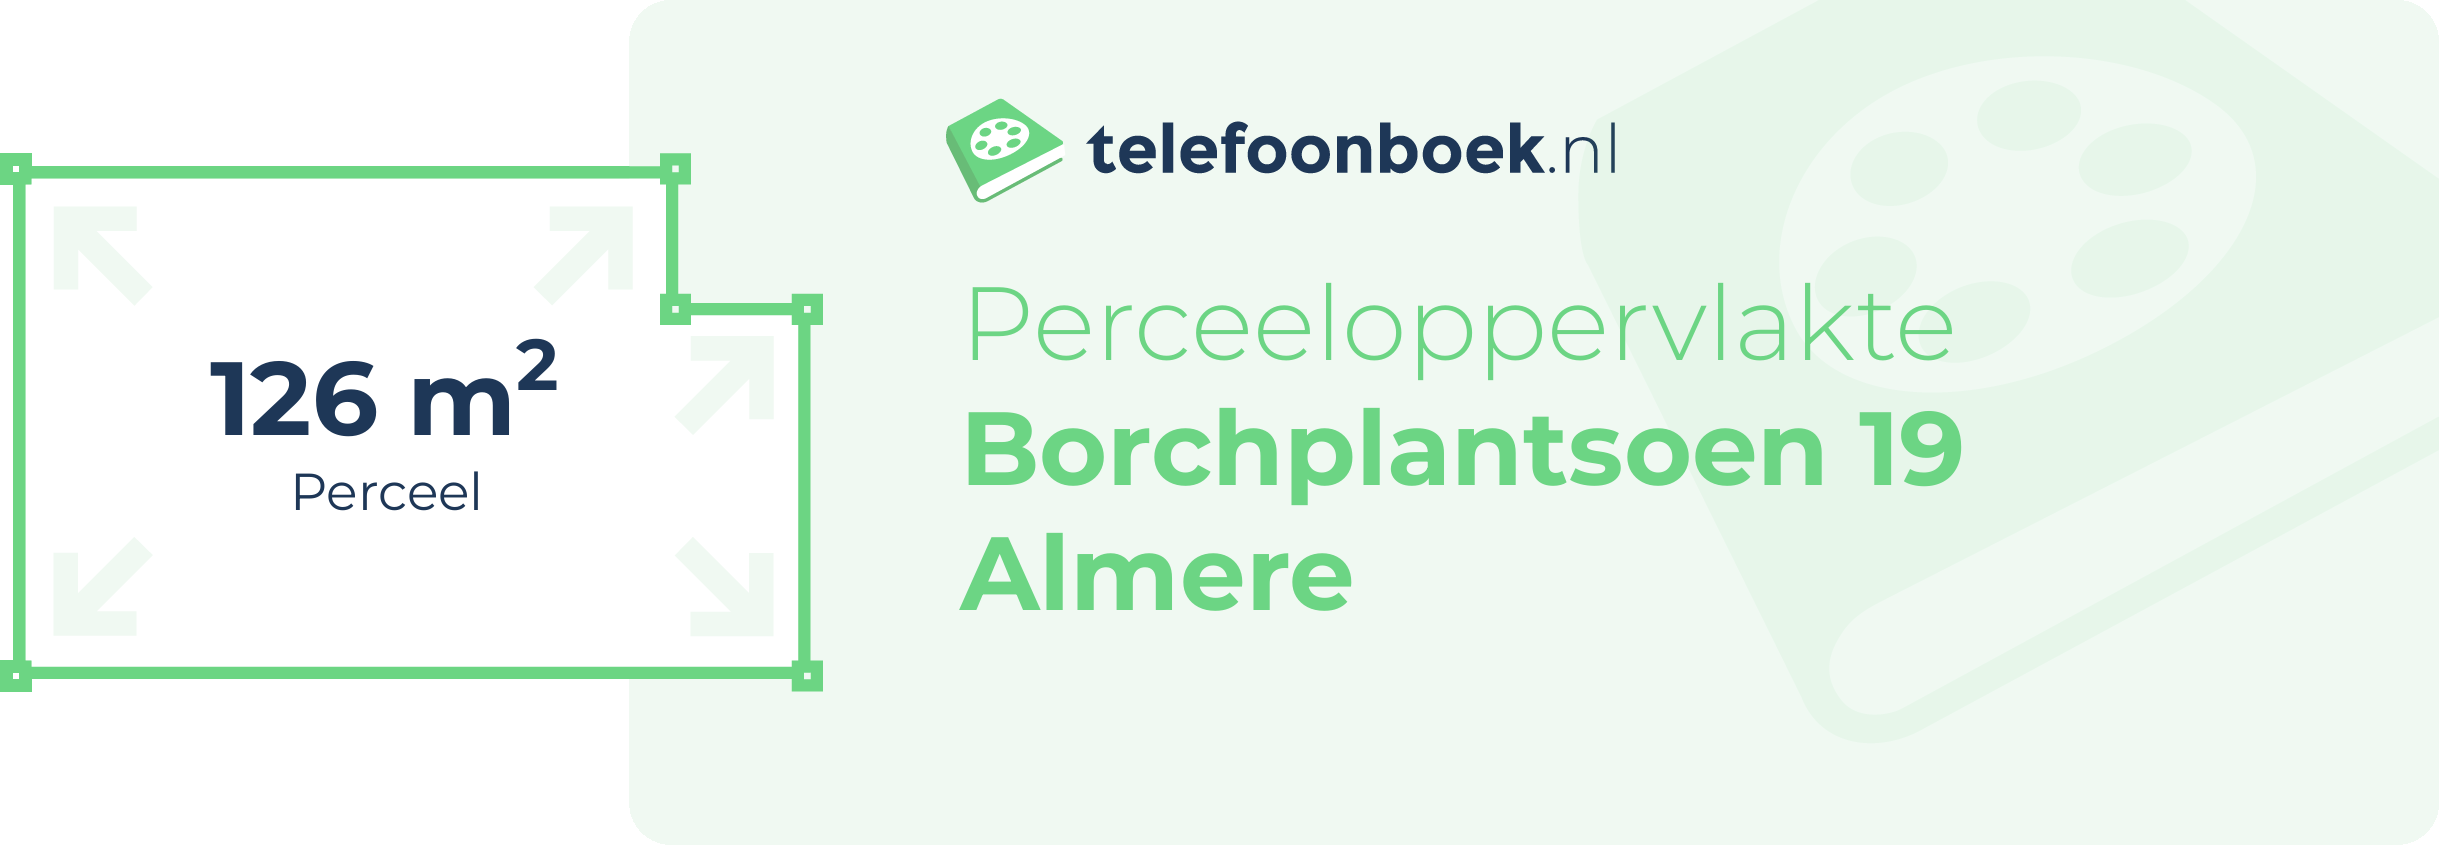 Perceeloppervlakte Borchplantsoen 19 Almere